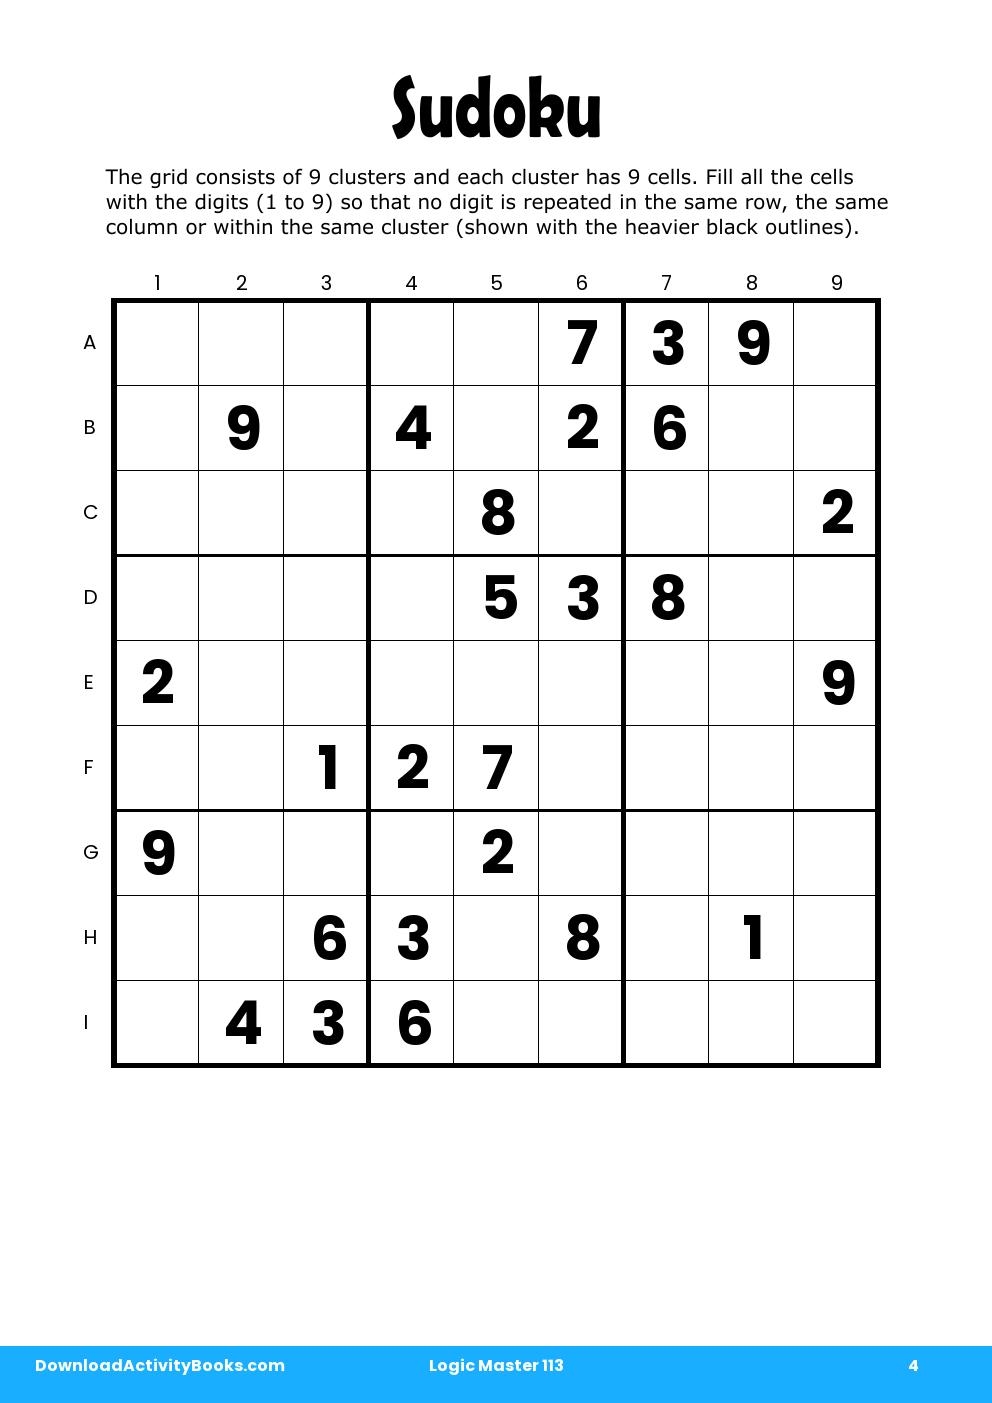 Sudoku in Logic Master 113